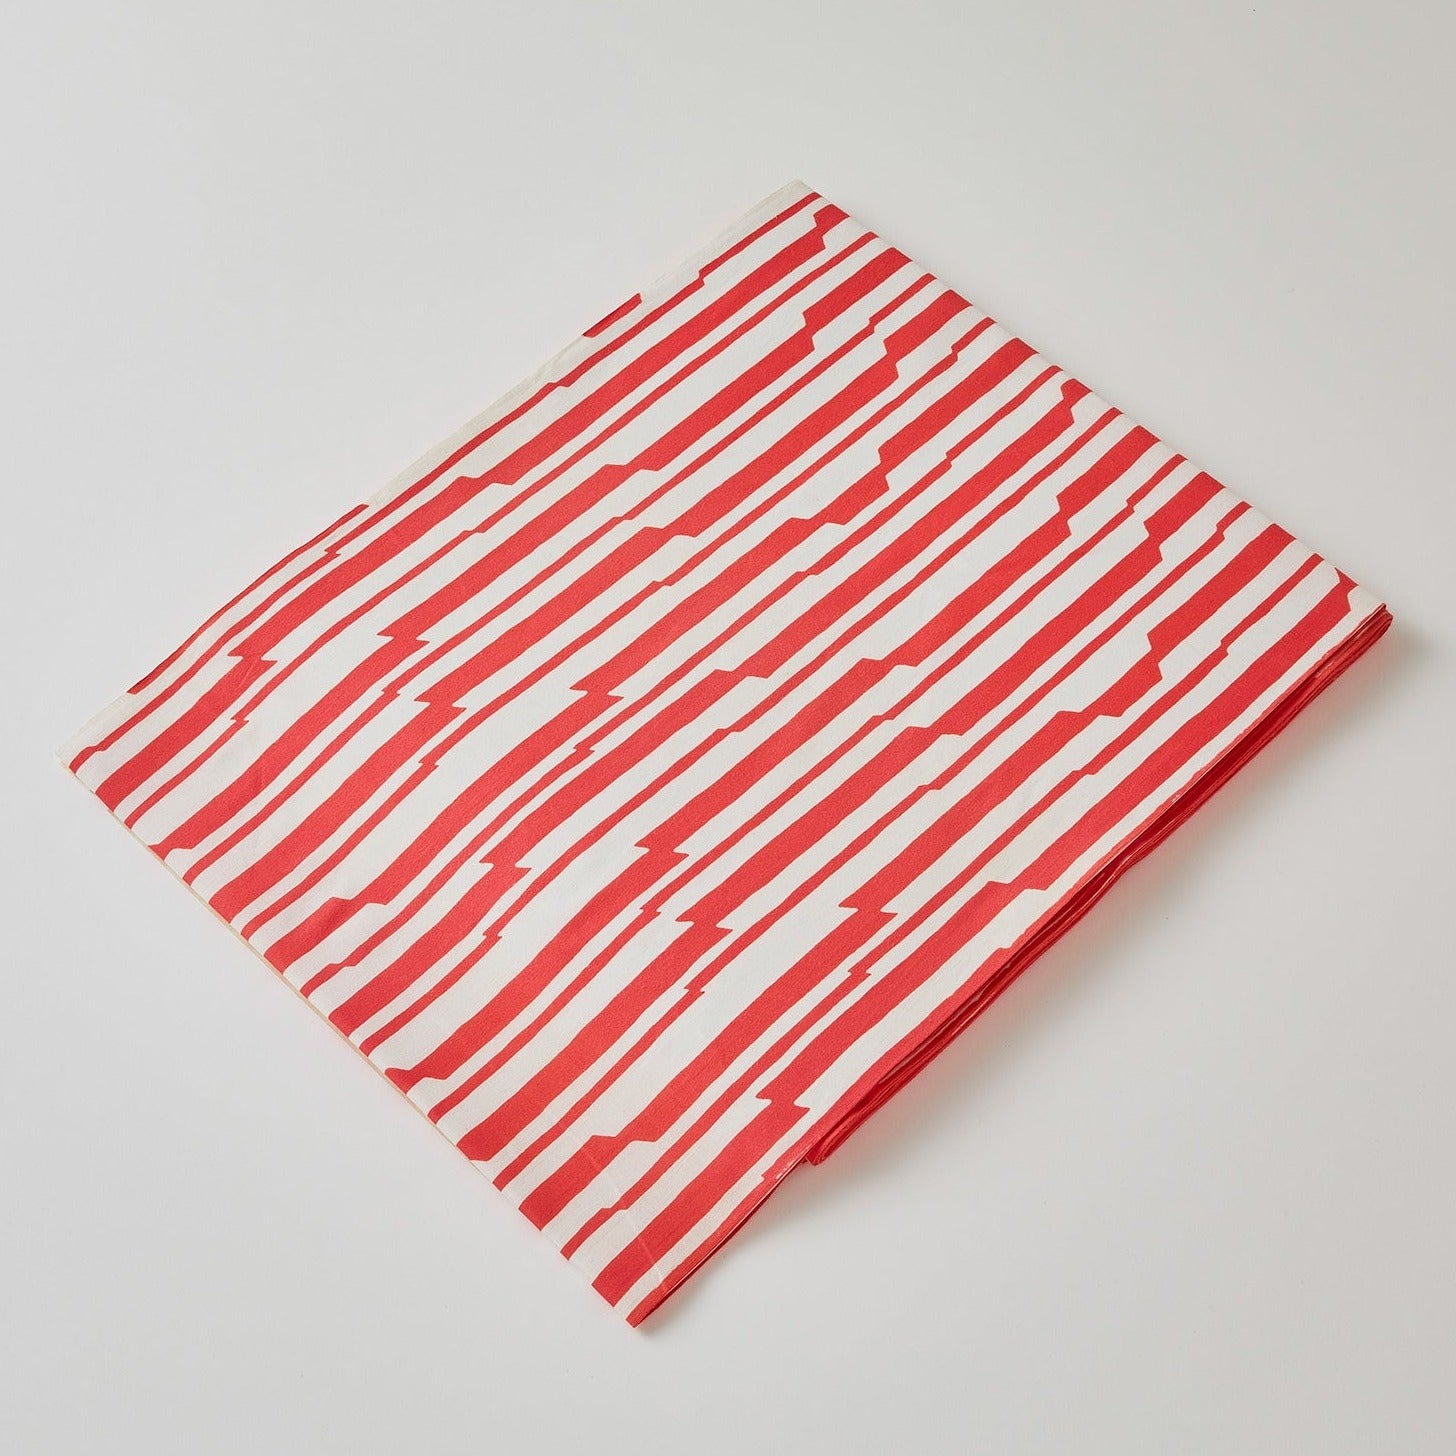 KAPUKI original yukata "Jagged stripes" pink